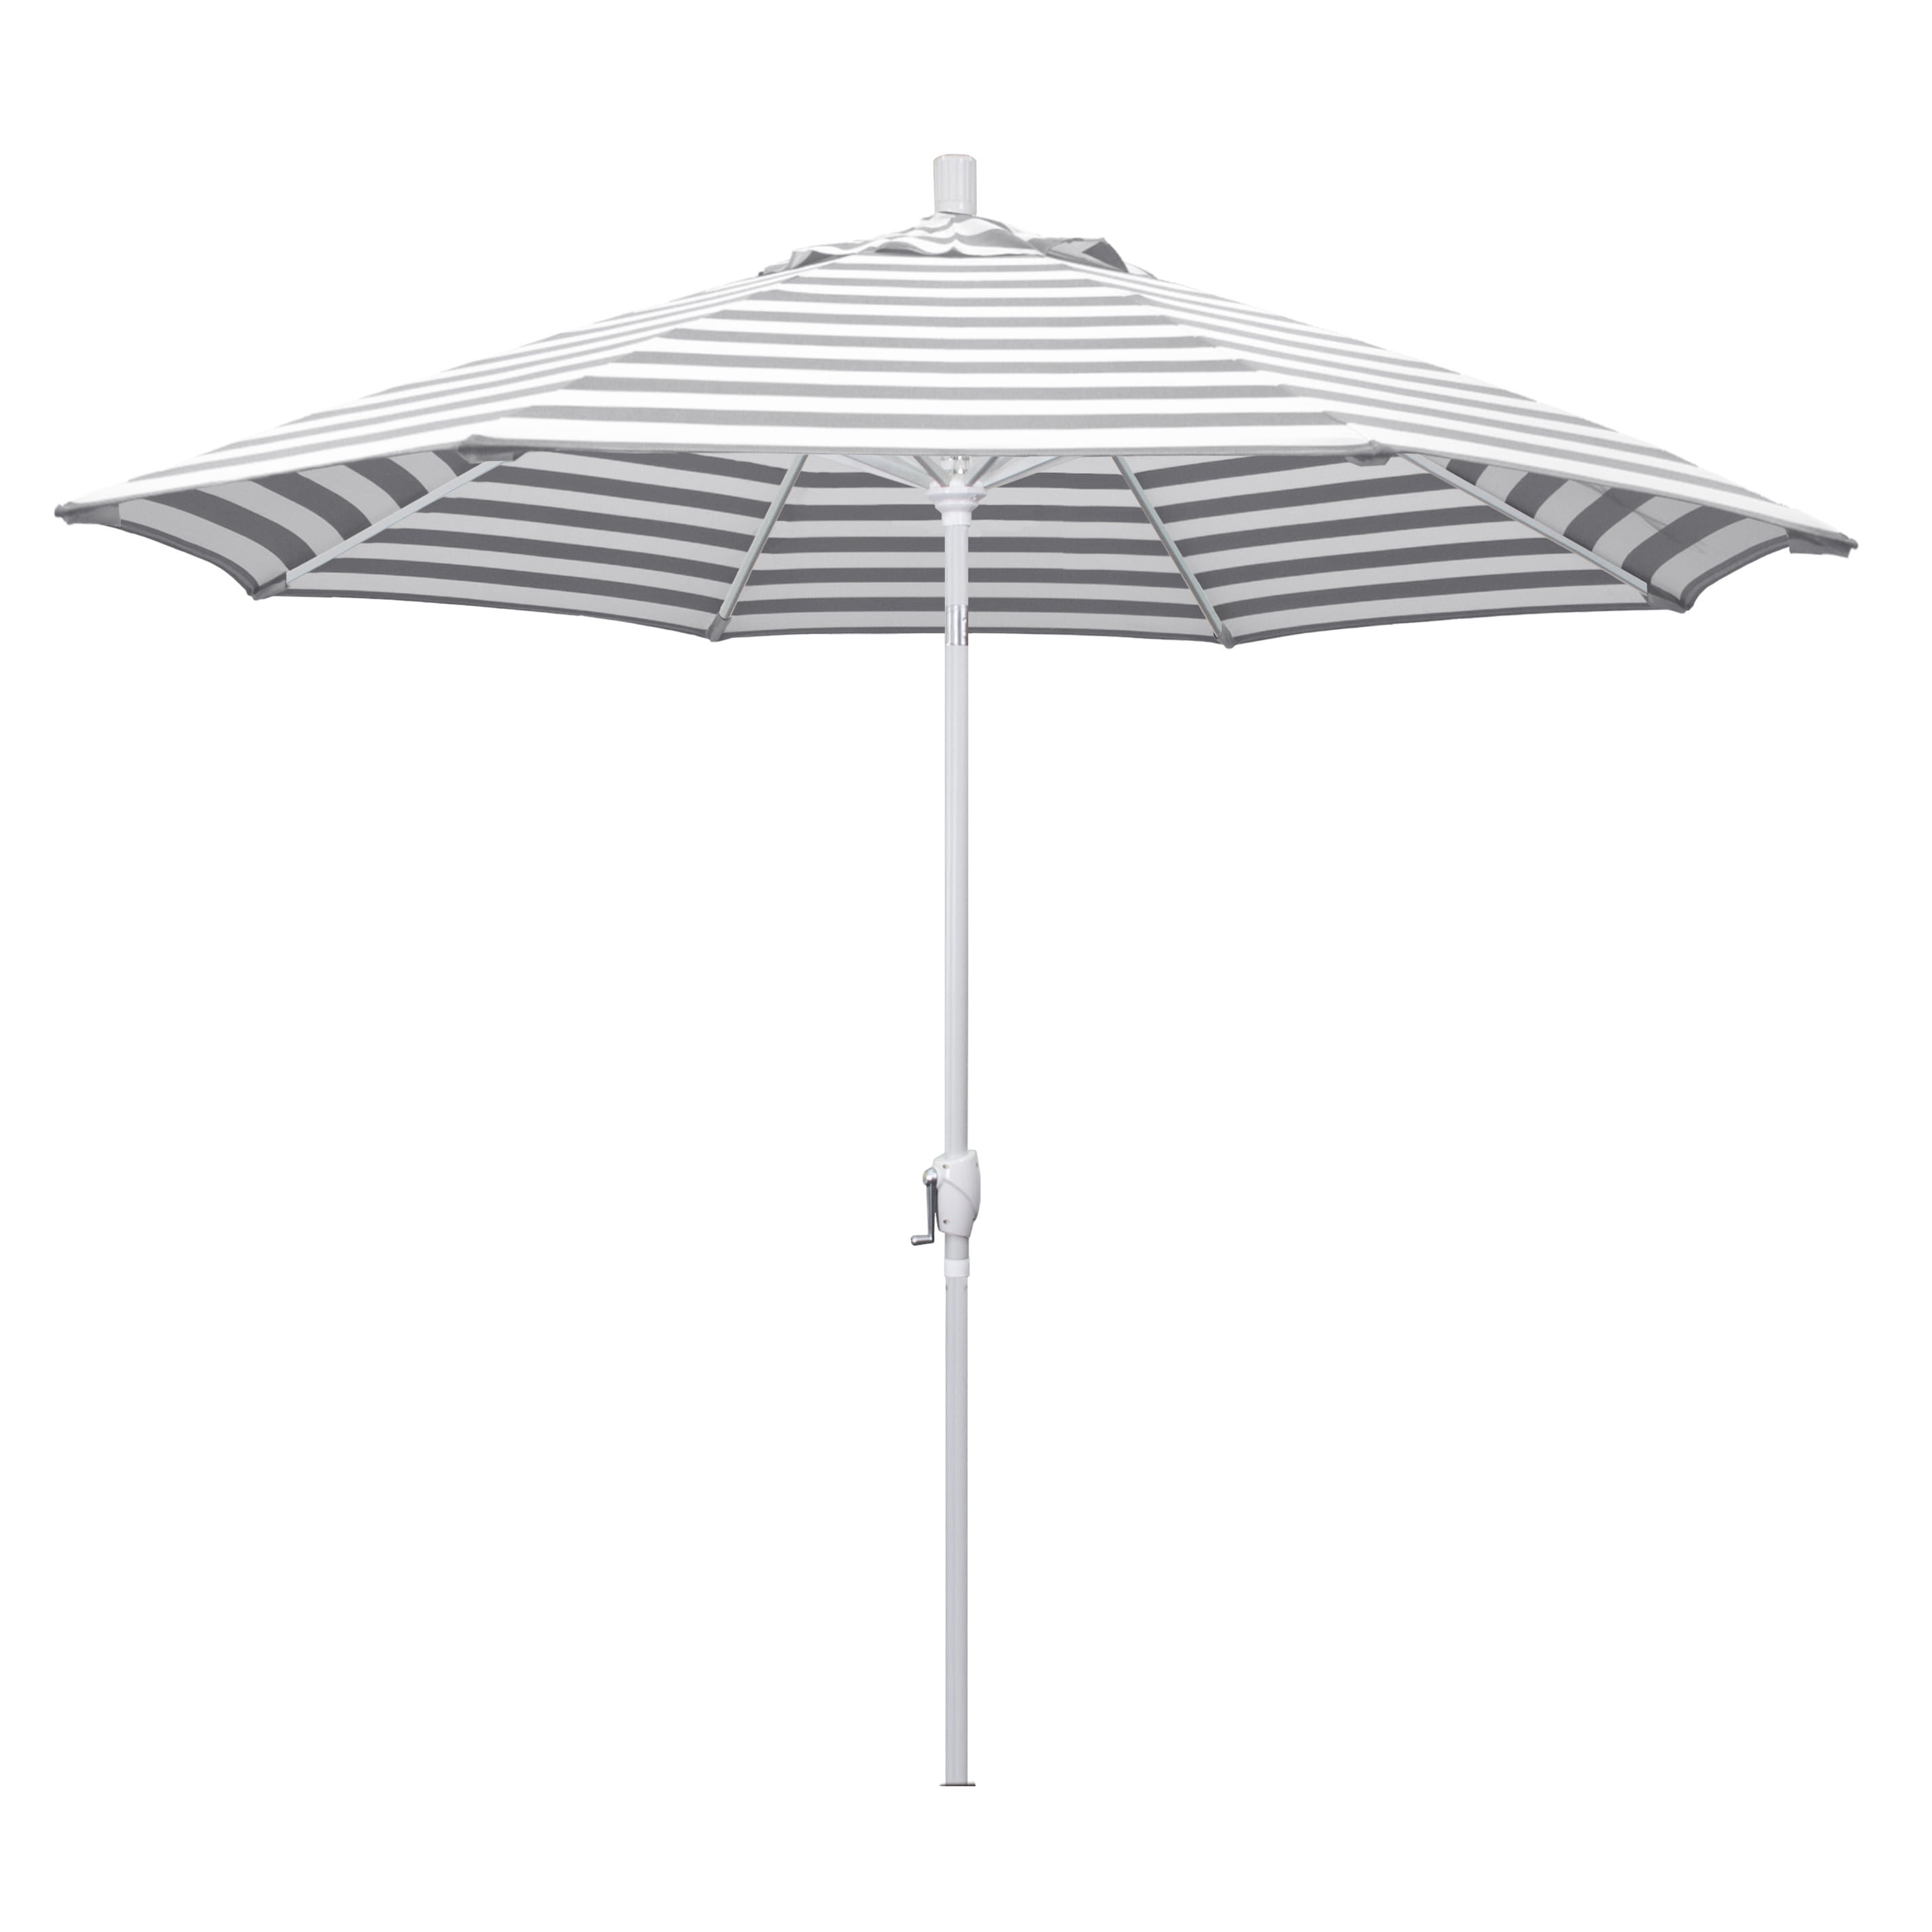 California Umbrella 9 ft. Aluminum Push Button Tilt Olefin Market Umbrella - image 1 of 3